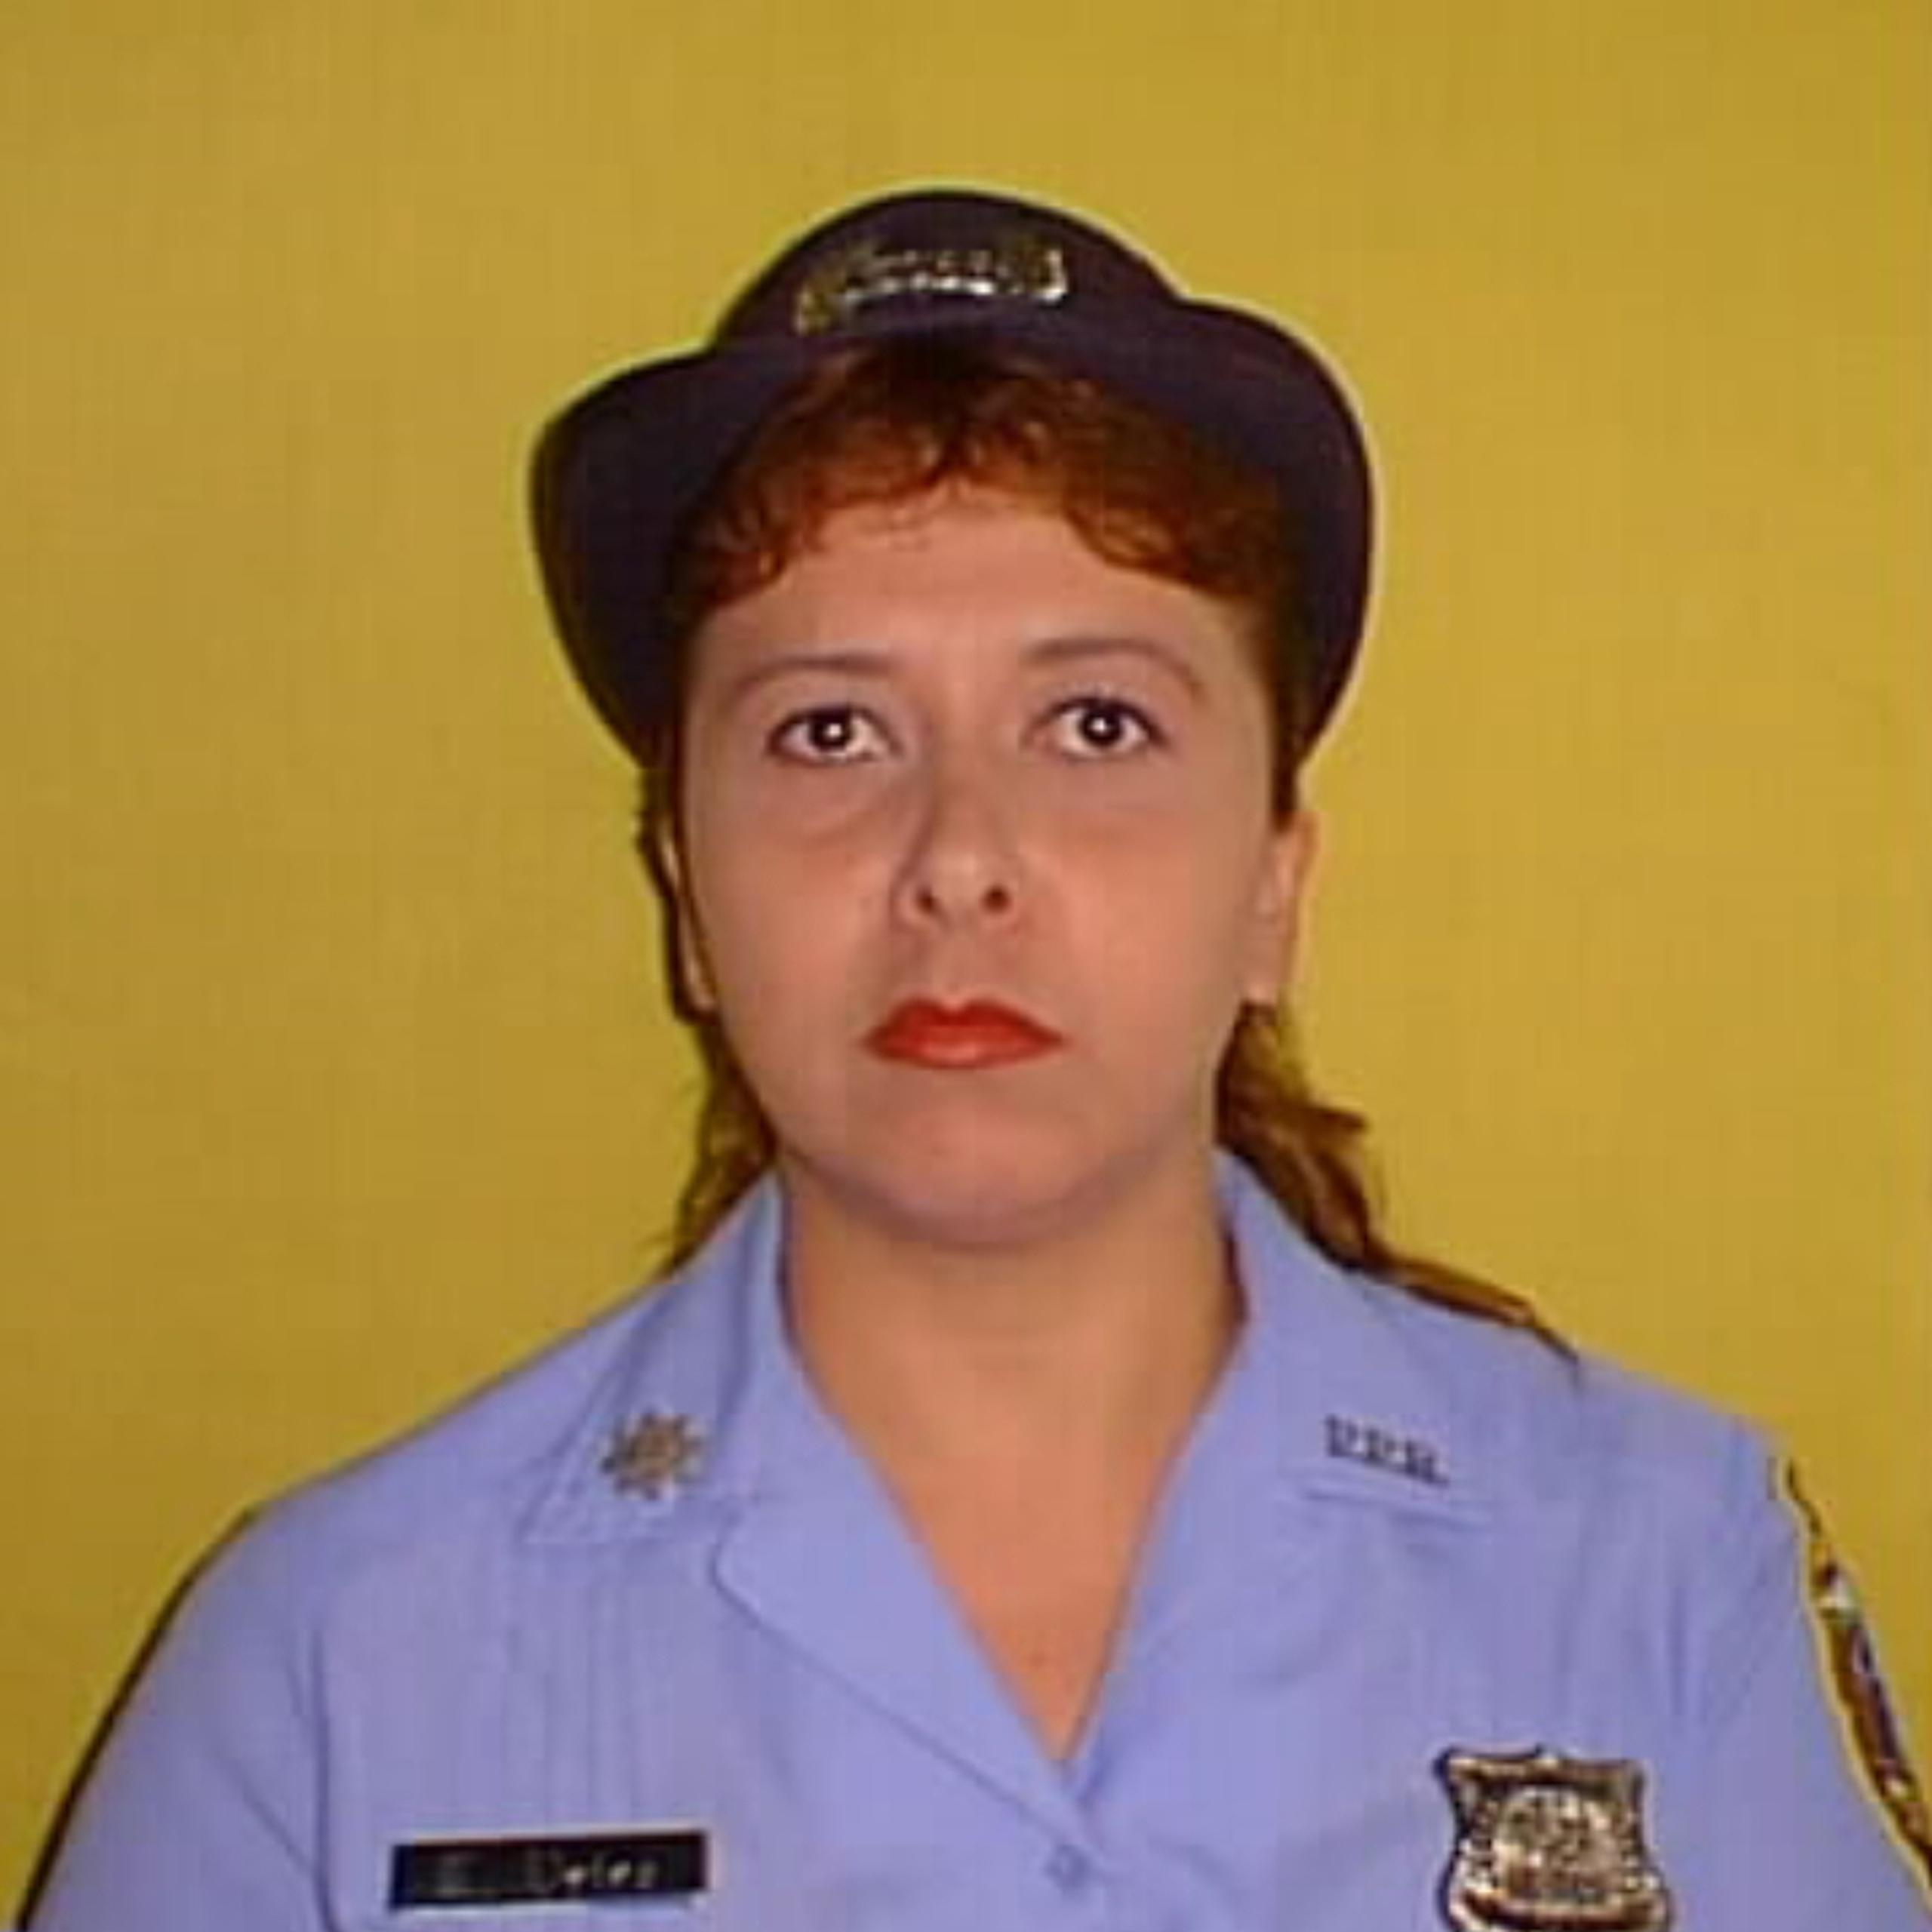 La exagente de la Policía, Luz N. Vélez Santiago, de 54 años, fue asesinda por su expareja el también expolicía Roberto Vázquez Montañez, quien luego se privó da la vida.